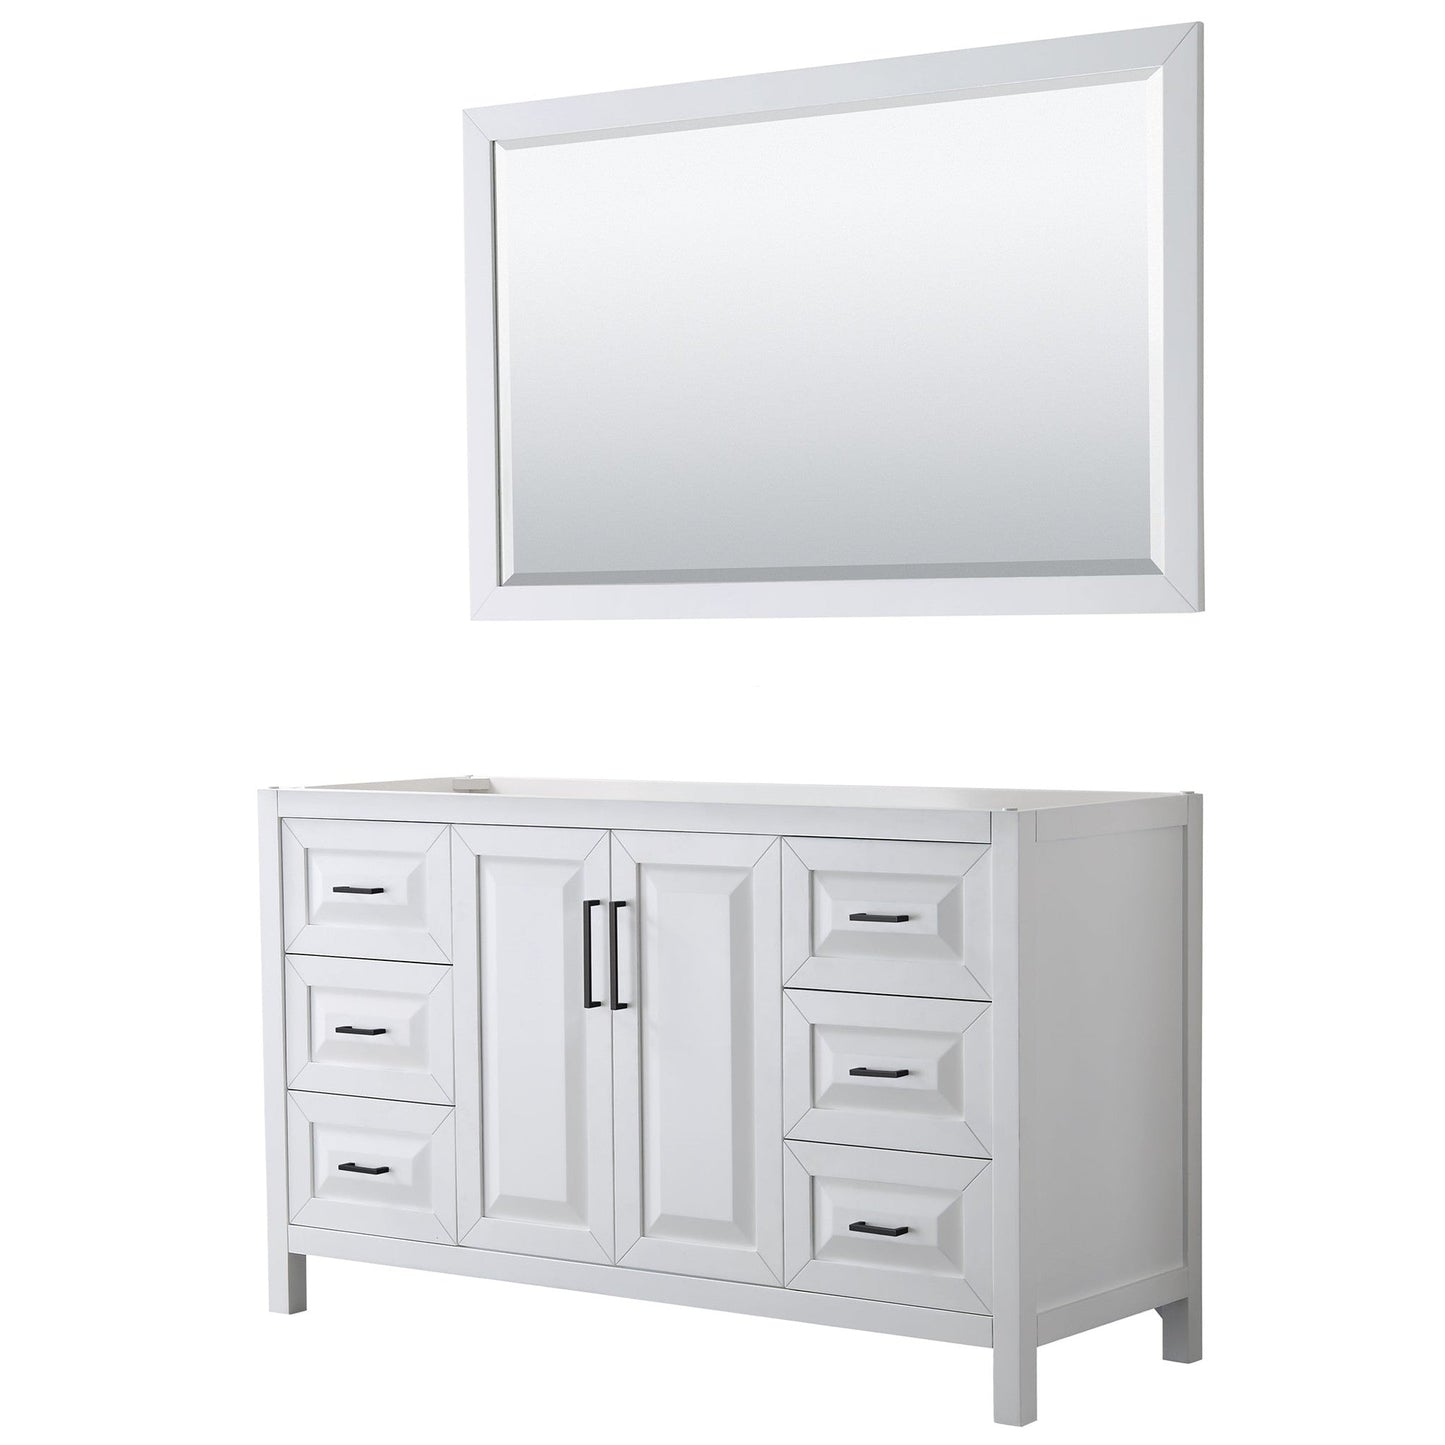 Daria 60" Single Bathroom Vanity in White, No Countertop, No Sink, Matte Black Trim, 58" Mirror